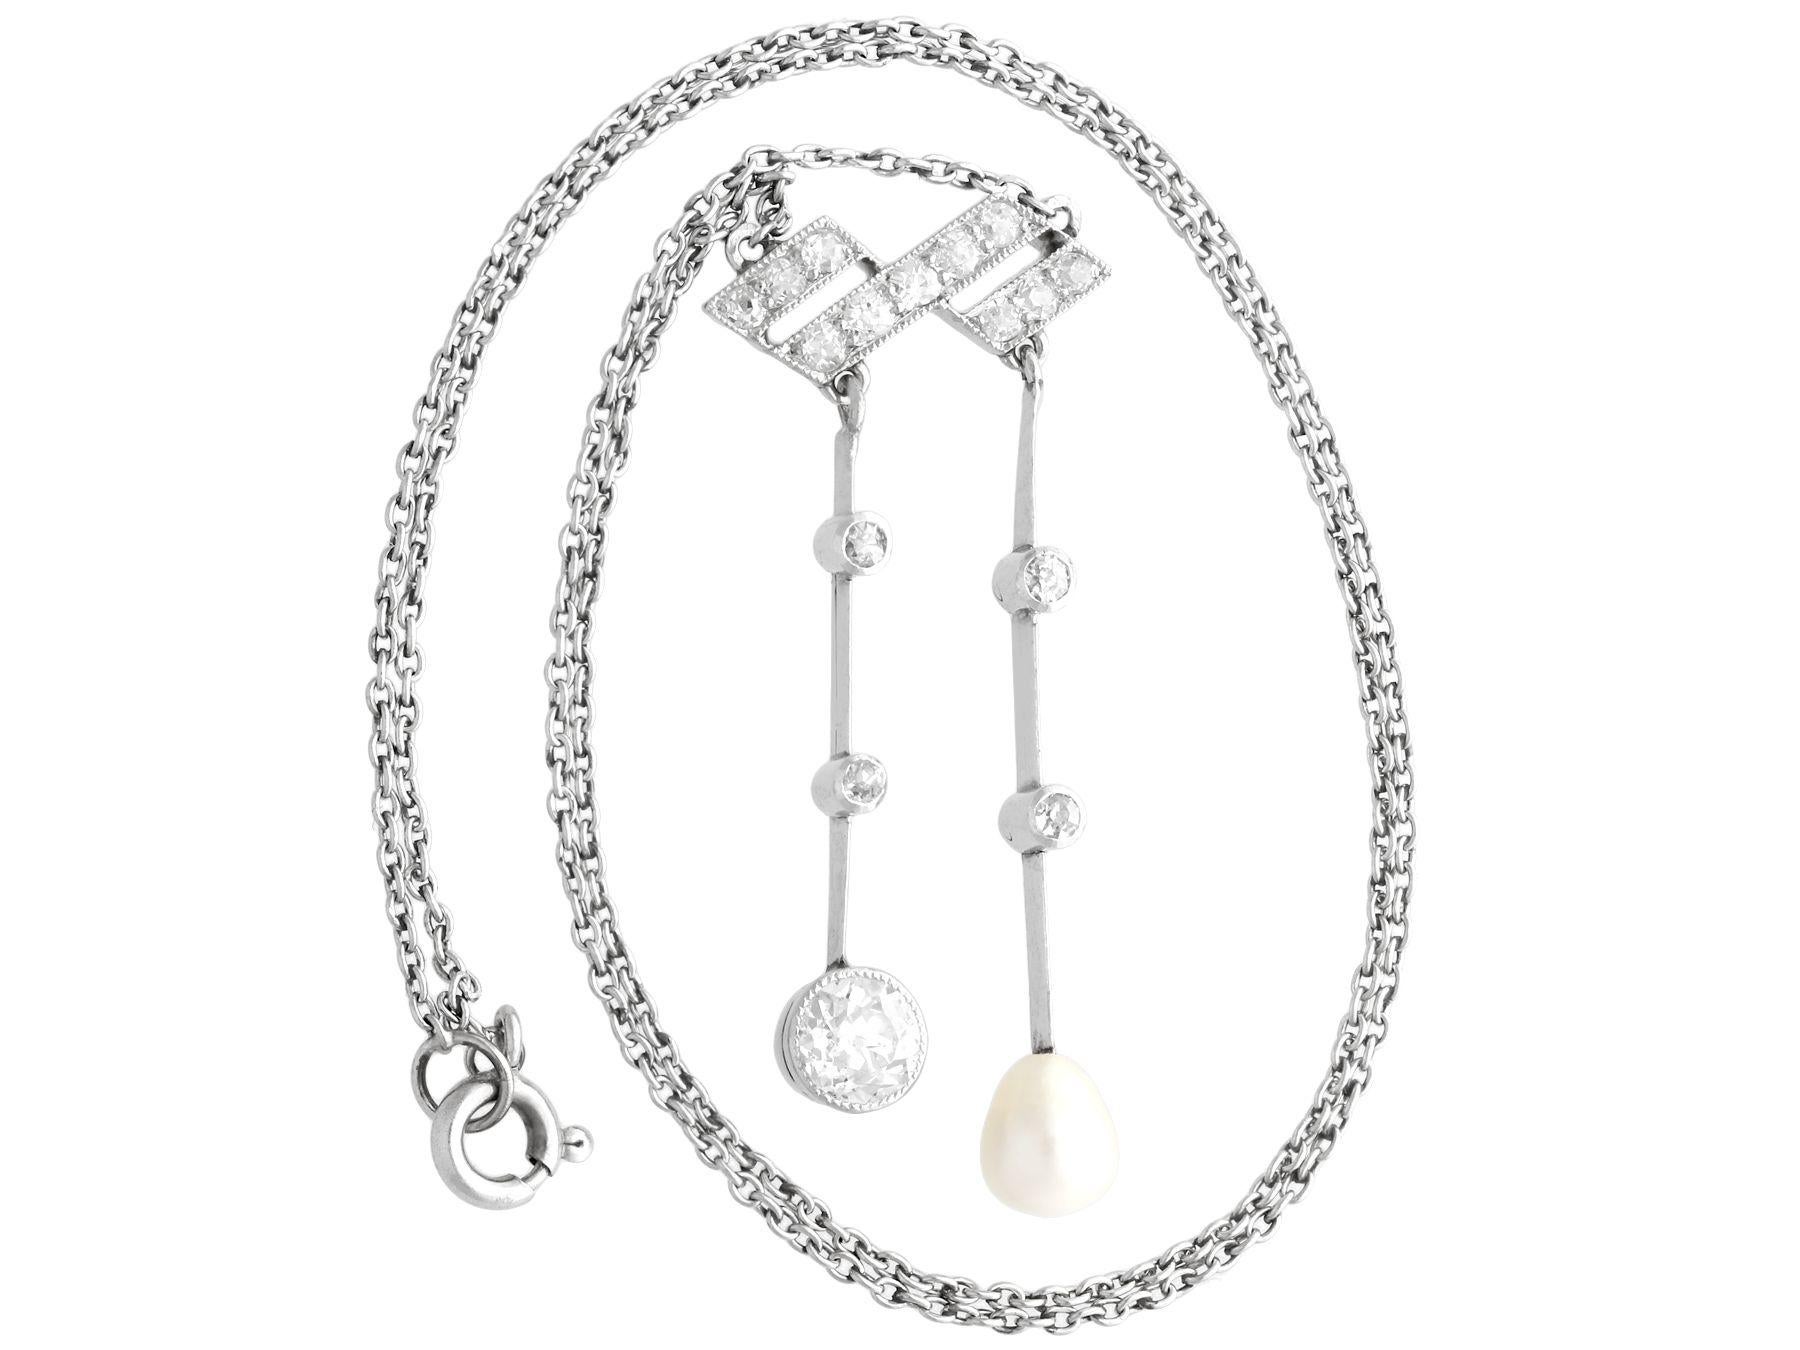 Eine feine und beeindruckende antike Perle, 1,12 Karat Diamant und Platin Tropfen Halskette; Teil unserer vielfältigen antiken Schmuck und Estate Jewelry Sammlungen.

Dieses feine und beeindruckende Collier mit Perlen und Diamanten ist aus Platin